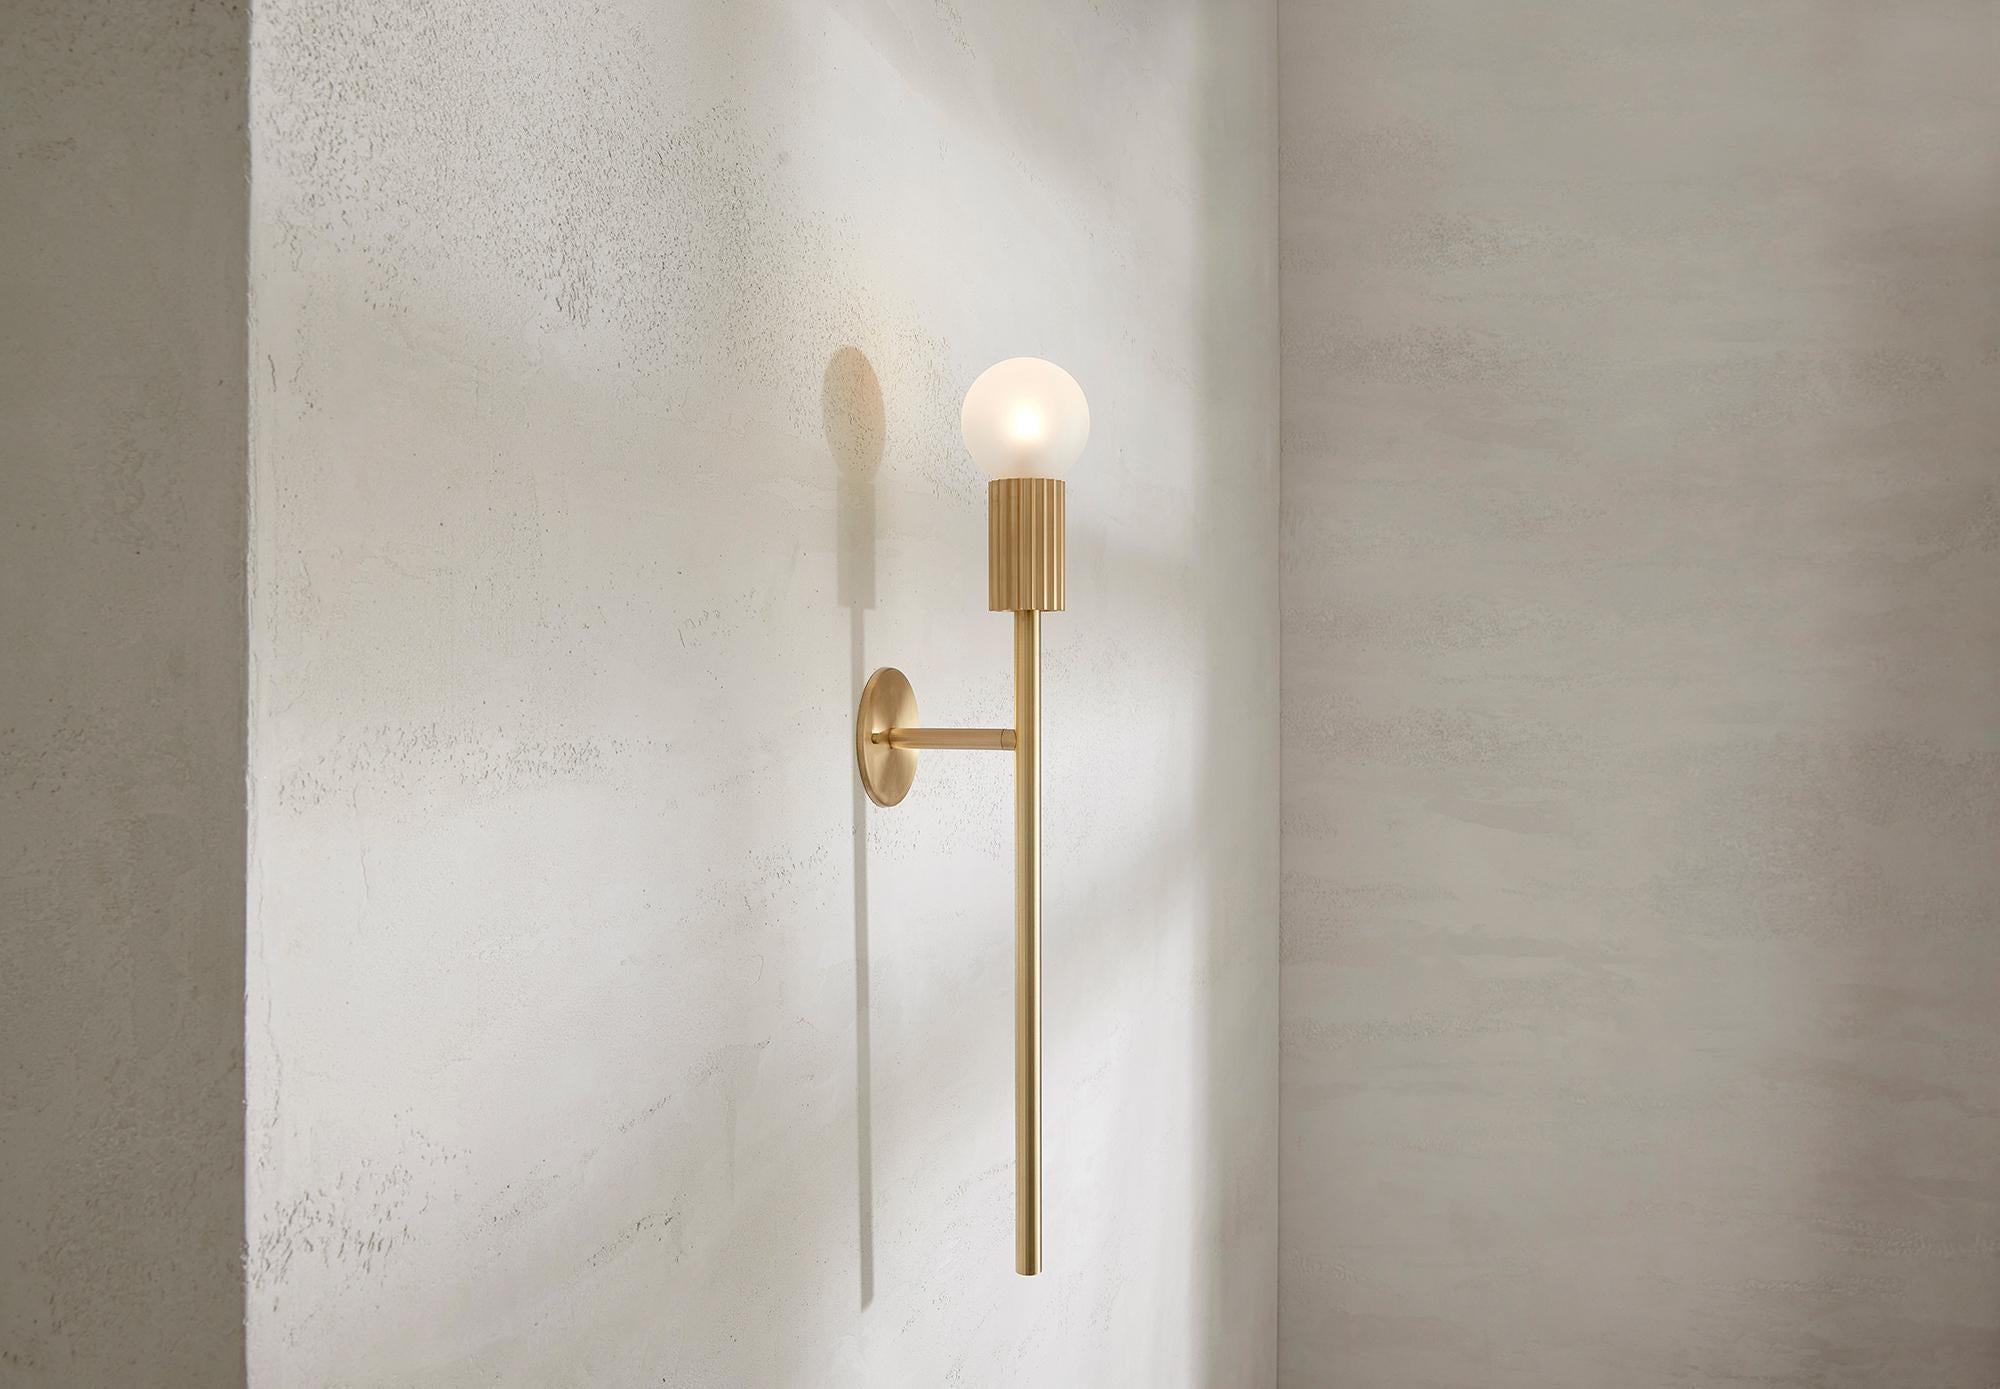 Die Attalos Wall Light, 95, ist eine neue Ergänzung der aktuellen Attalos-Reihe und behält ihre klassische skulpturale Ästhetik bei, die an antike griechische Architekturformen erinnert. Mit einer mattierten LED-Kugel, die auf einem Sockel und einem